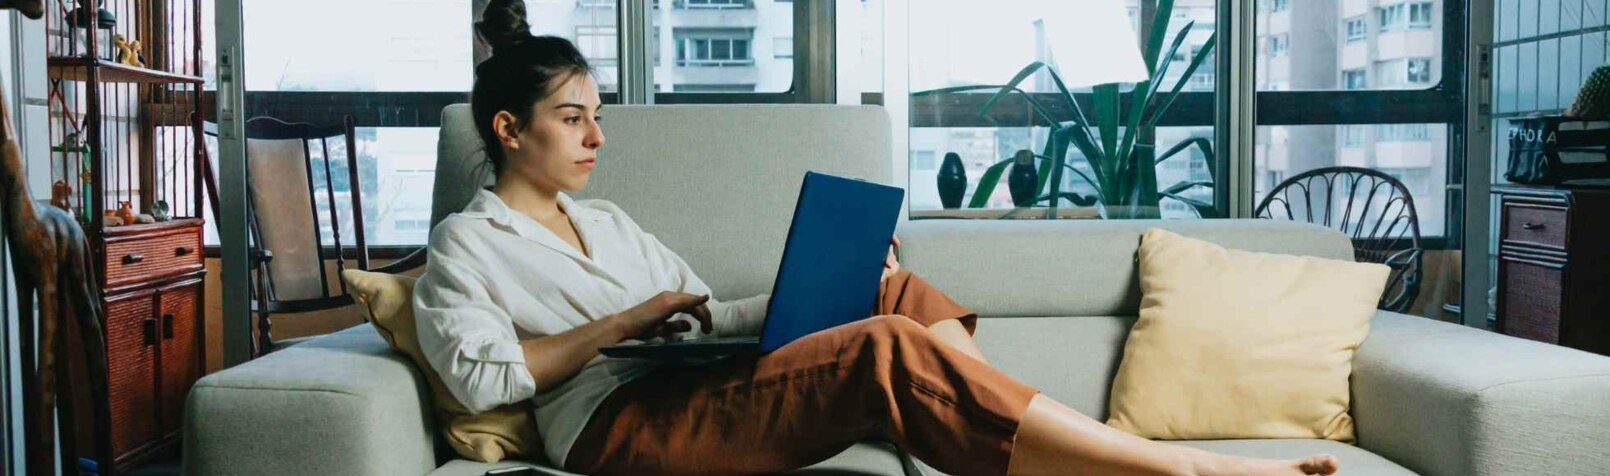 Eine Frau liegt auf einem Sofa und arbeitet mit einem Laptop.